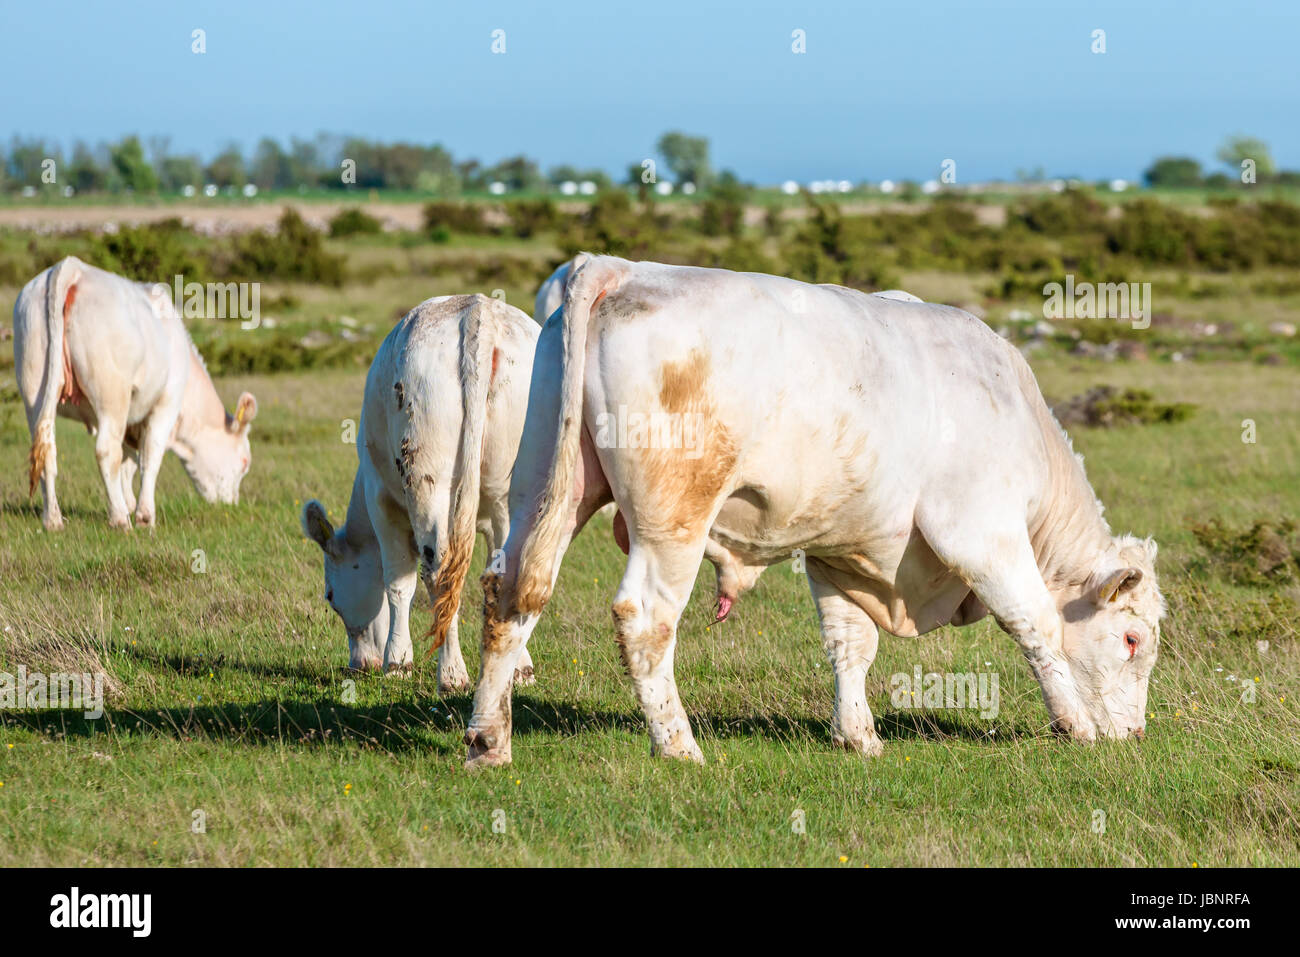 Beige dorados steer caminando con vaquillas en el árido paisaje. Foto de stock